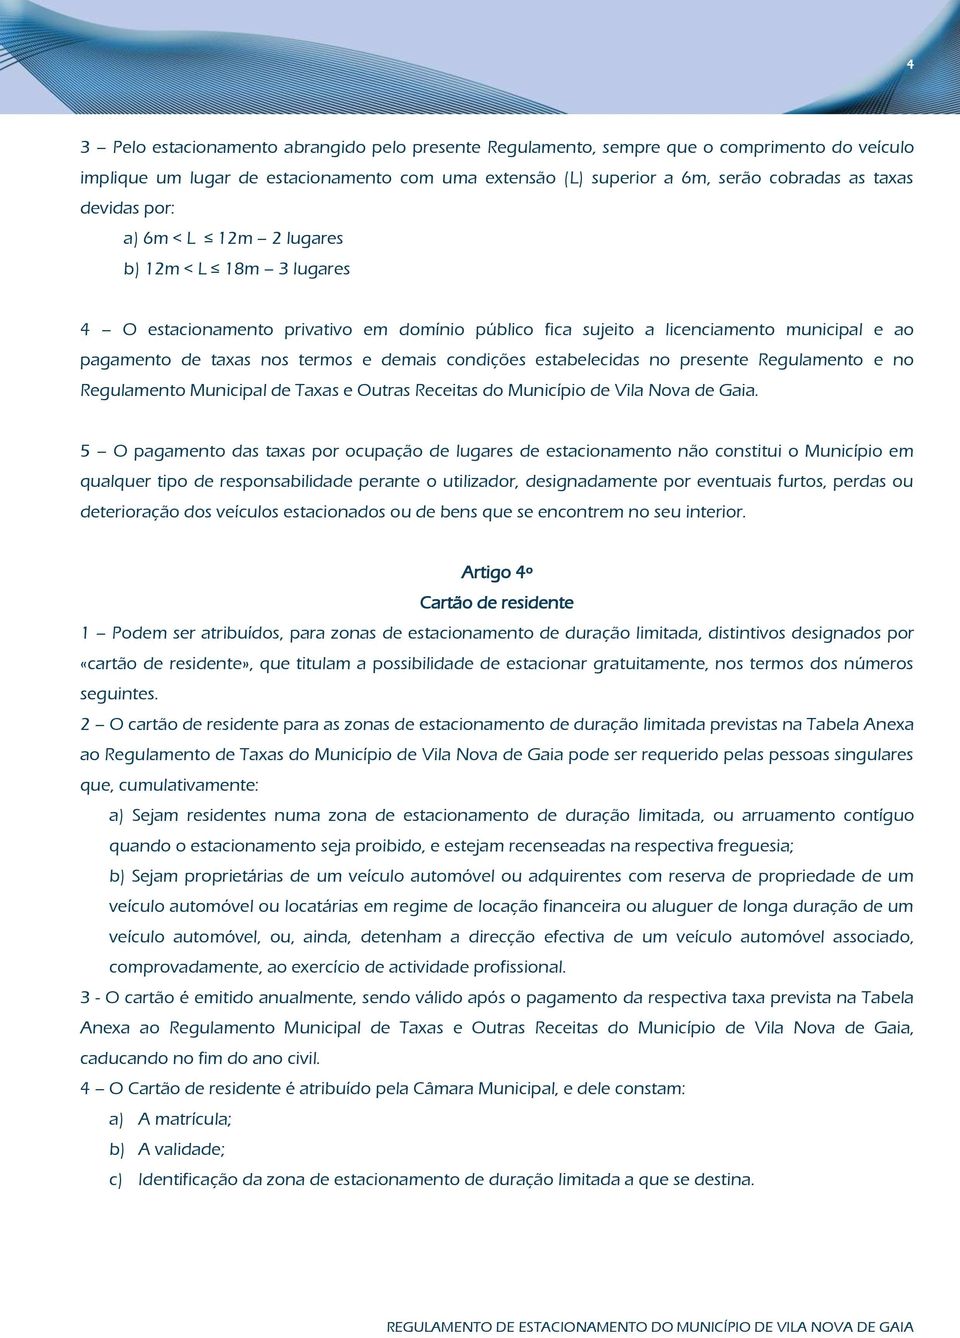 condições estabelecidas no presente Regulamento e no Regulamento Municipal de Taxas e Outras Receitas do Município de Vila Nova de Gaia.